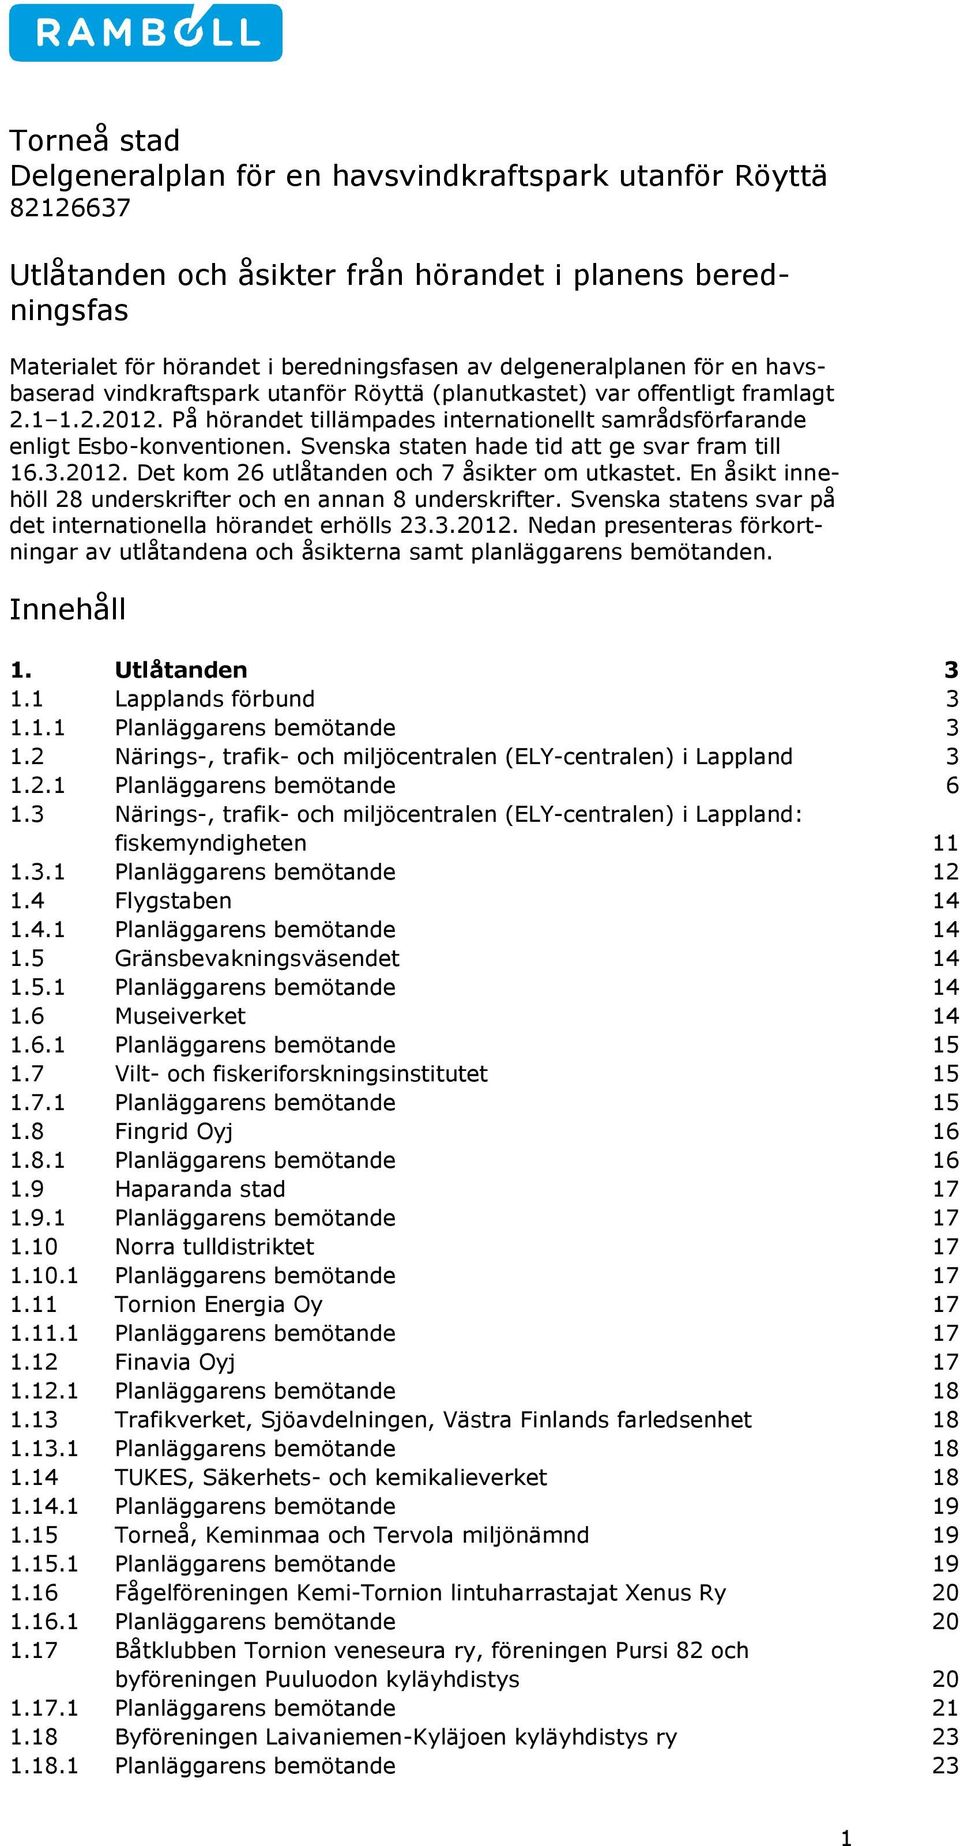 Svenska staten hade tid att ge svar fram till 16.3.2012. Det kom 26 utlåtanden och 7 åsikter om utkastet. En åsikt innehöll 28 underskrifter och en annan 8 underskrifter.